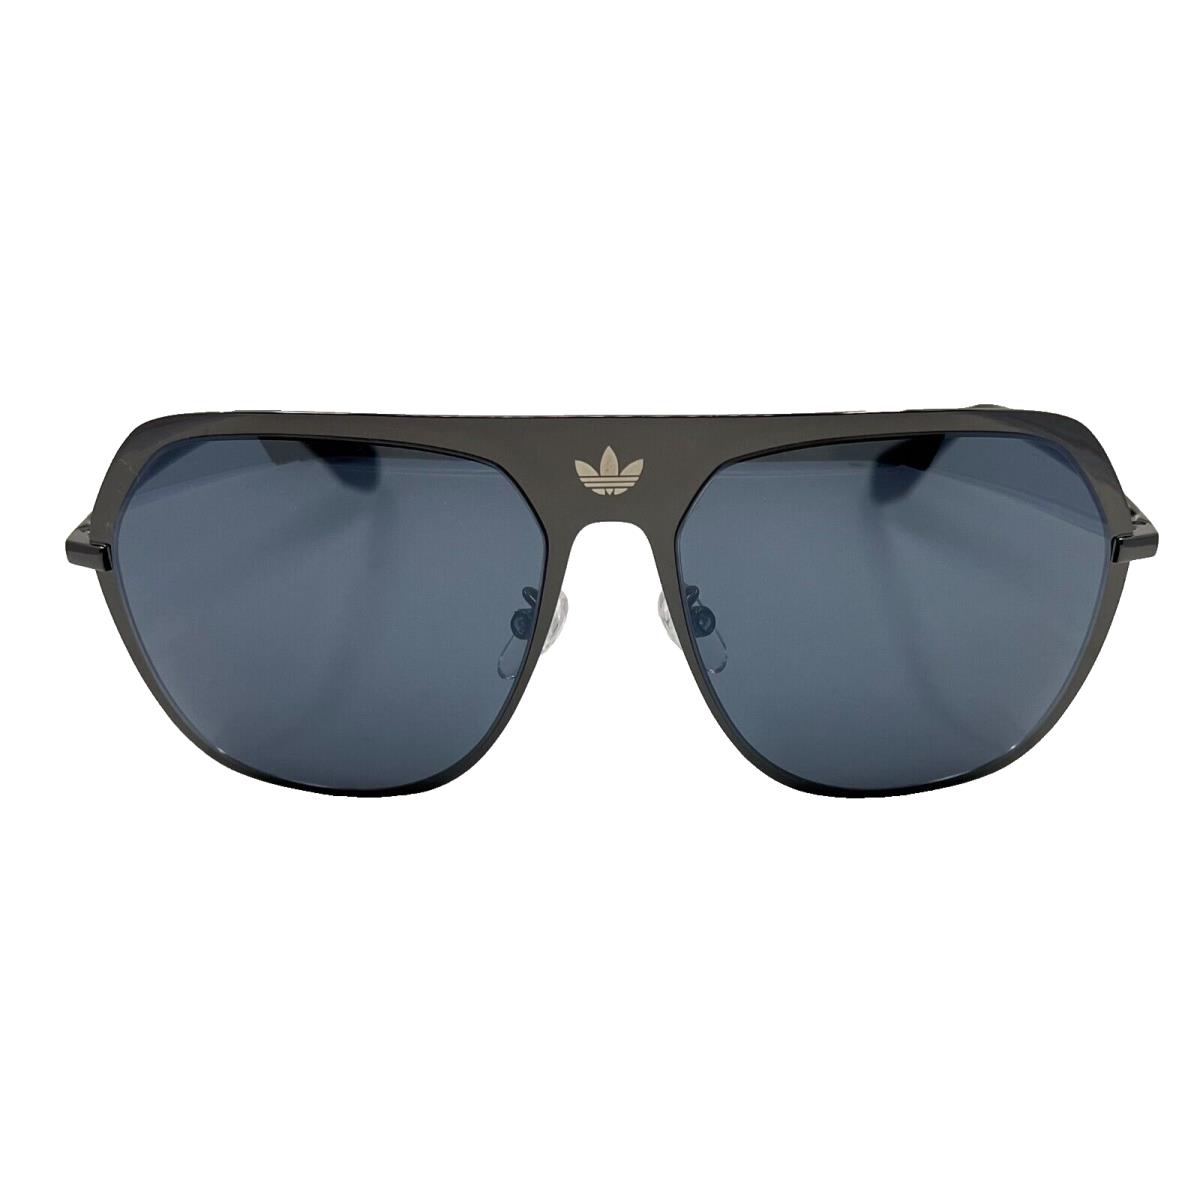 Adidas Originals - OR0037 08C 58/15/140 - Gun - Sunglasses Case - Frame: Gray, Lens: Gray